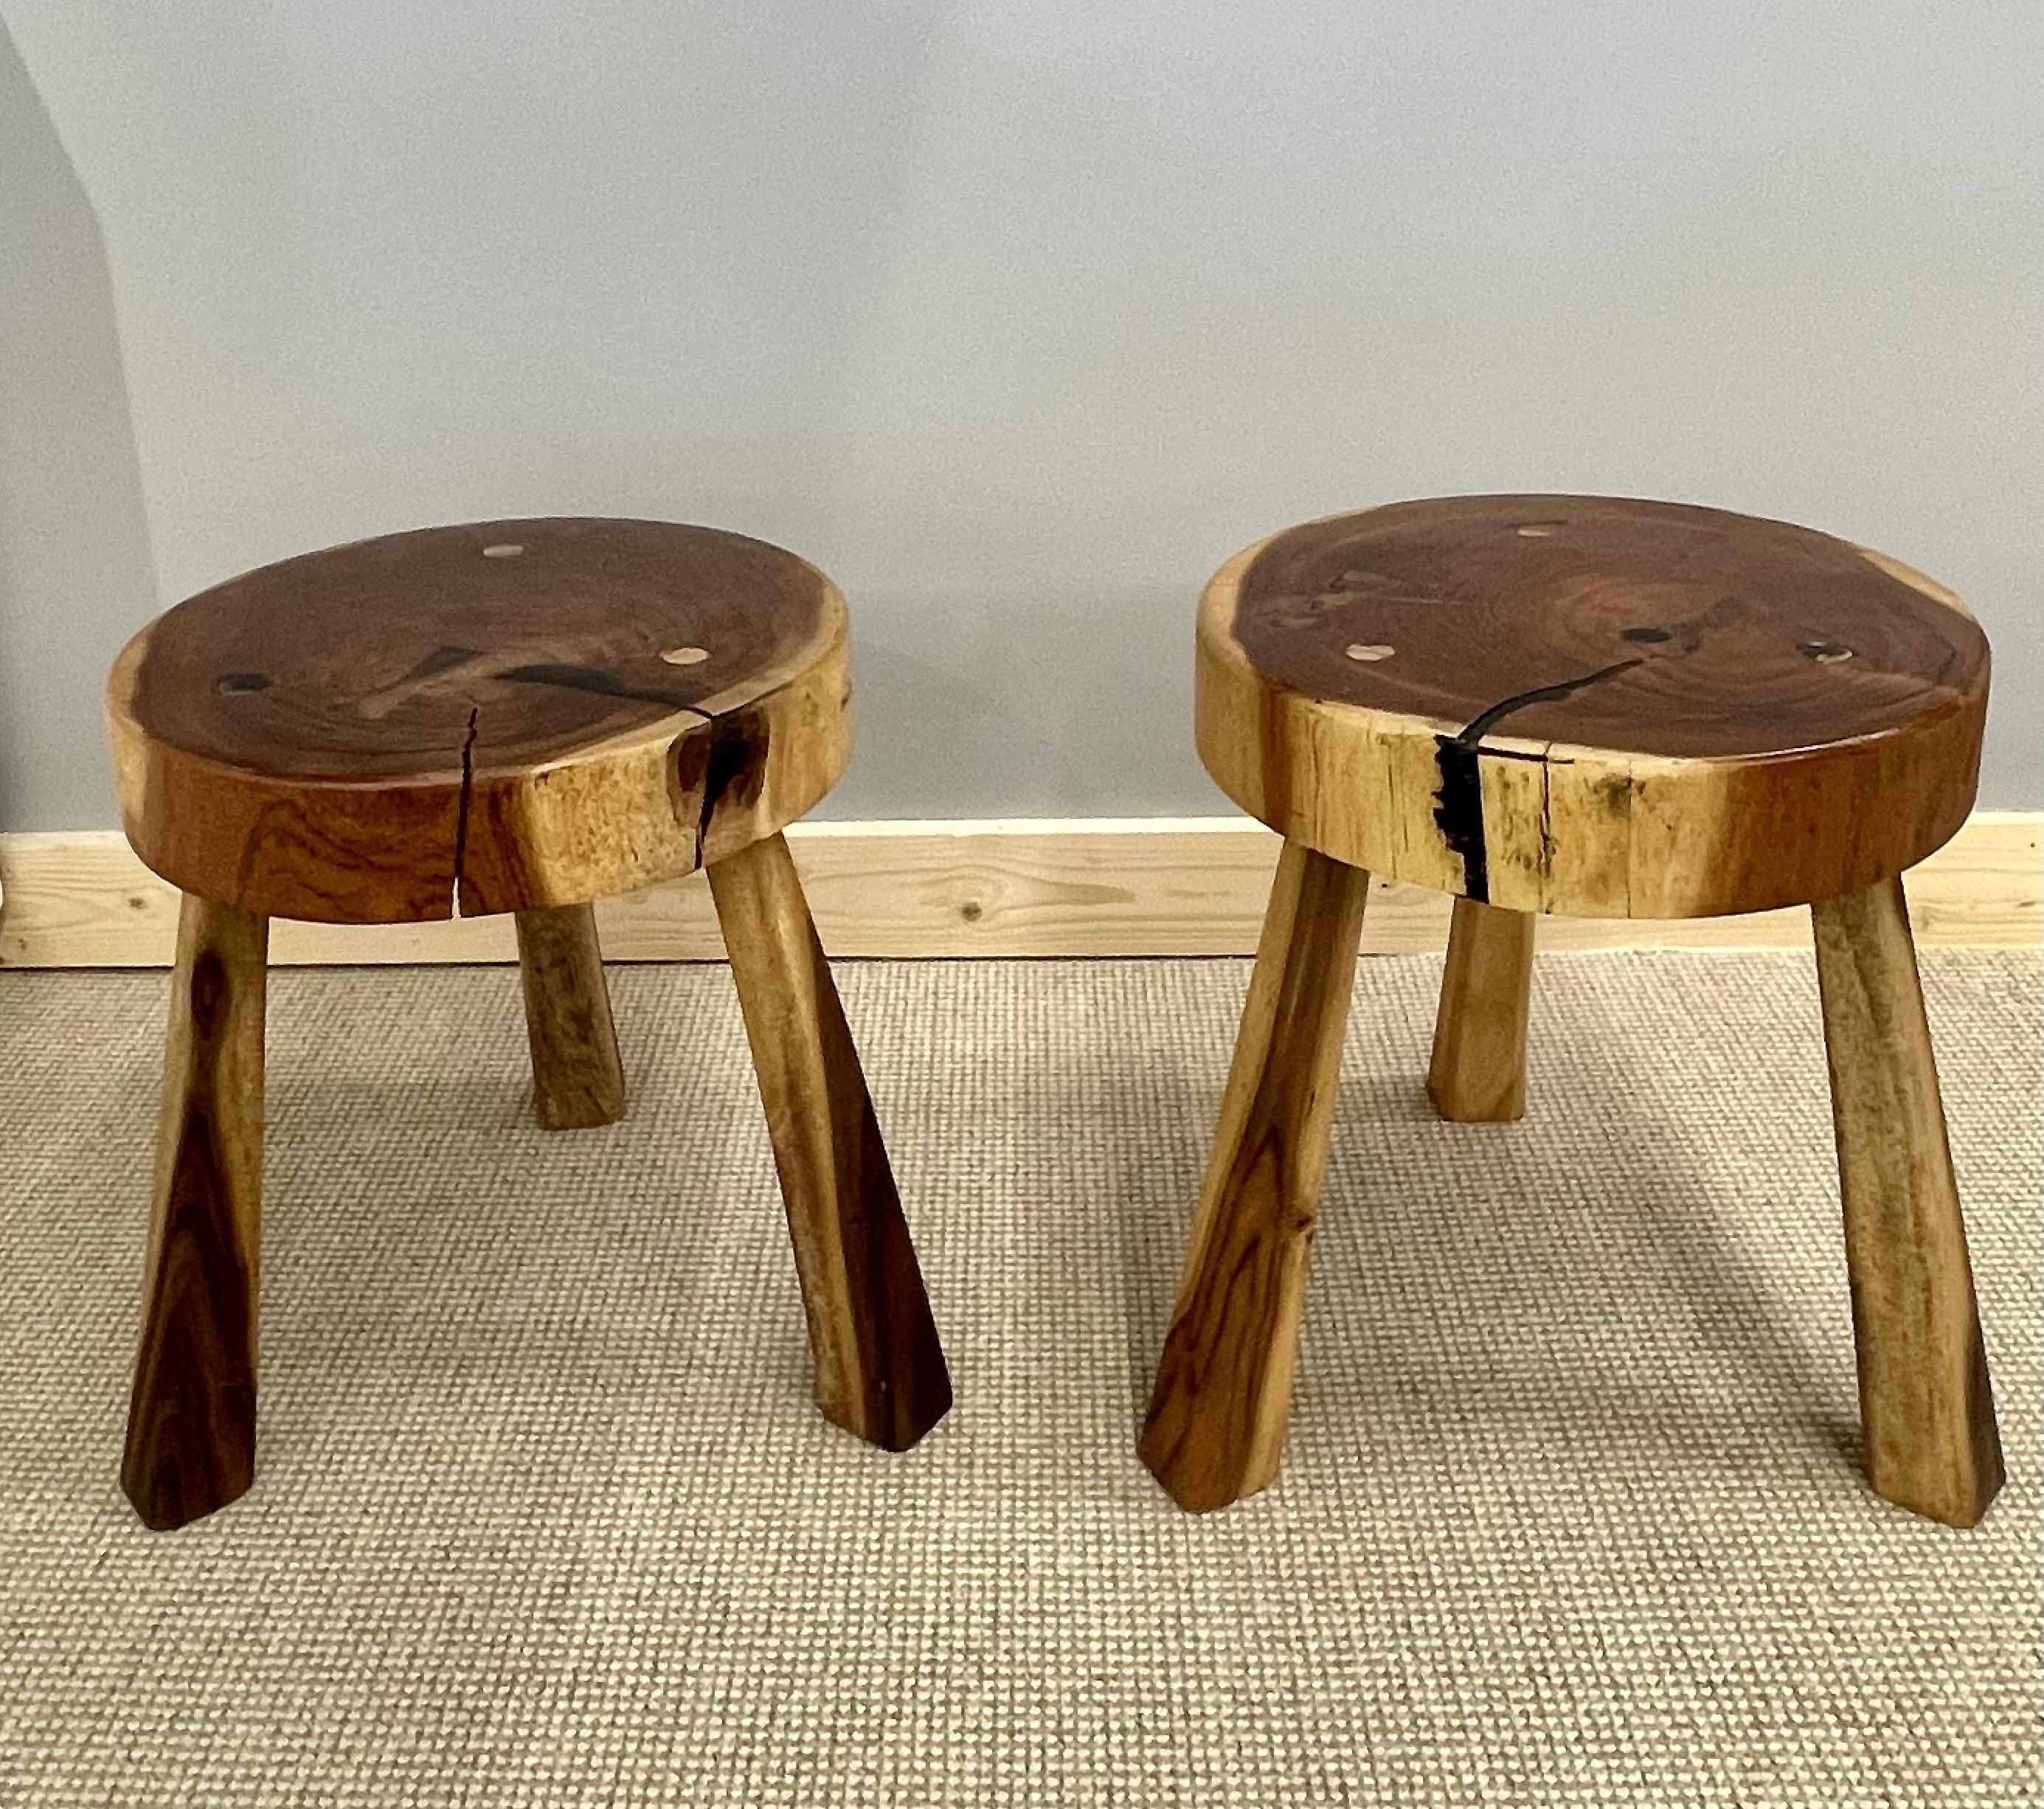 Paar Mid-Century Modern Nakashima Style Organic Wooden Zwei Hocker / Beistelltische
 
Organische Form A Holzhocker aus dem 20. Jahrhundert. Amerikanisches Studio, Massivholz. Diese Stücke können auch als flache Beistelltische verwendet werden.
